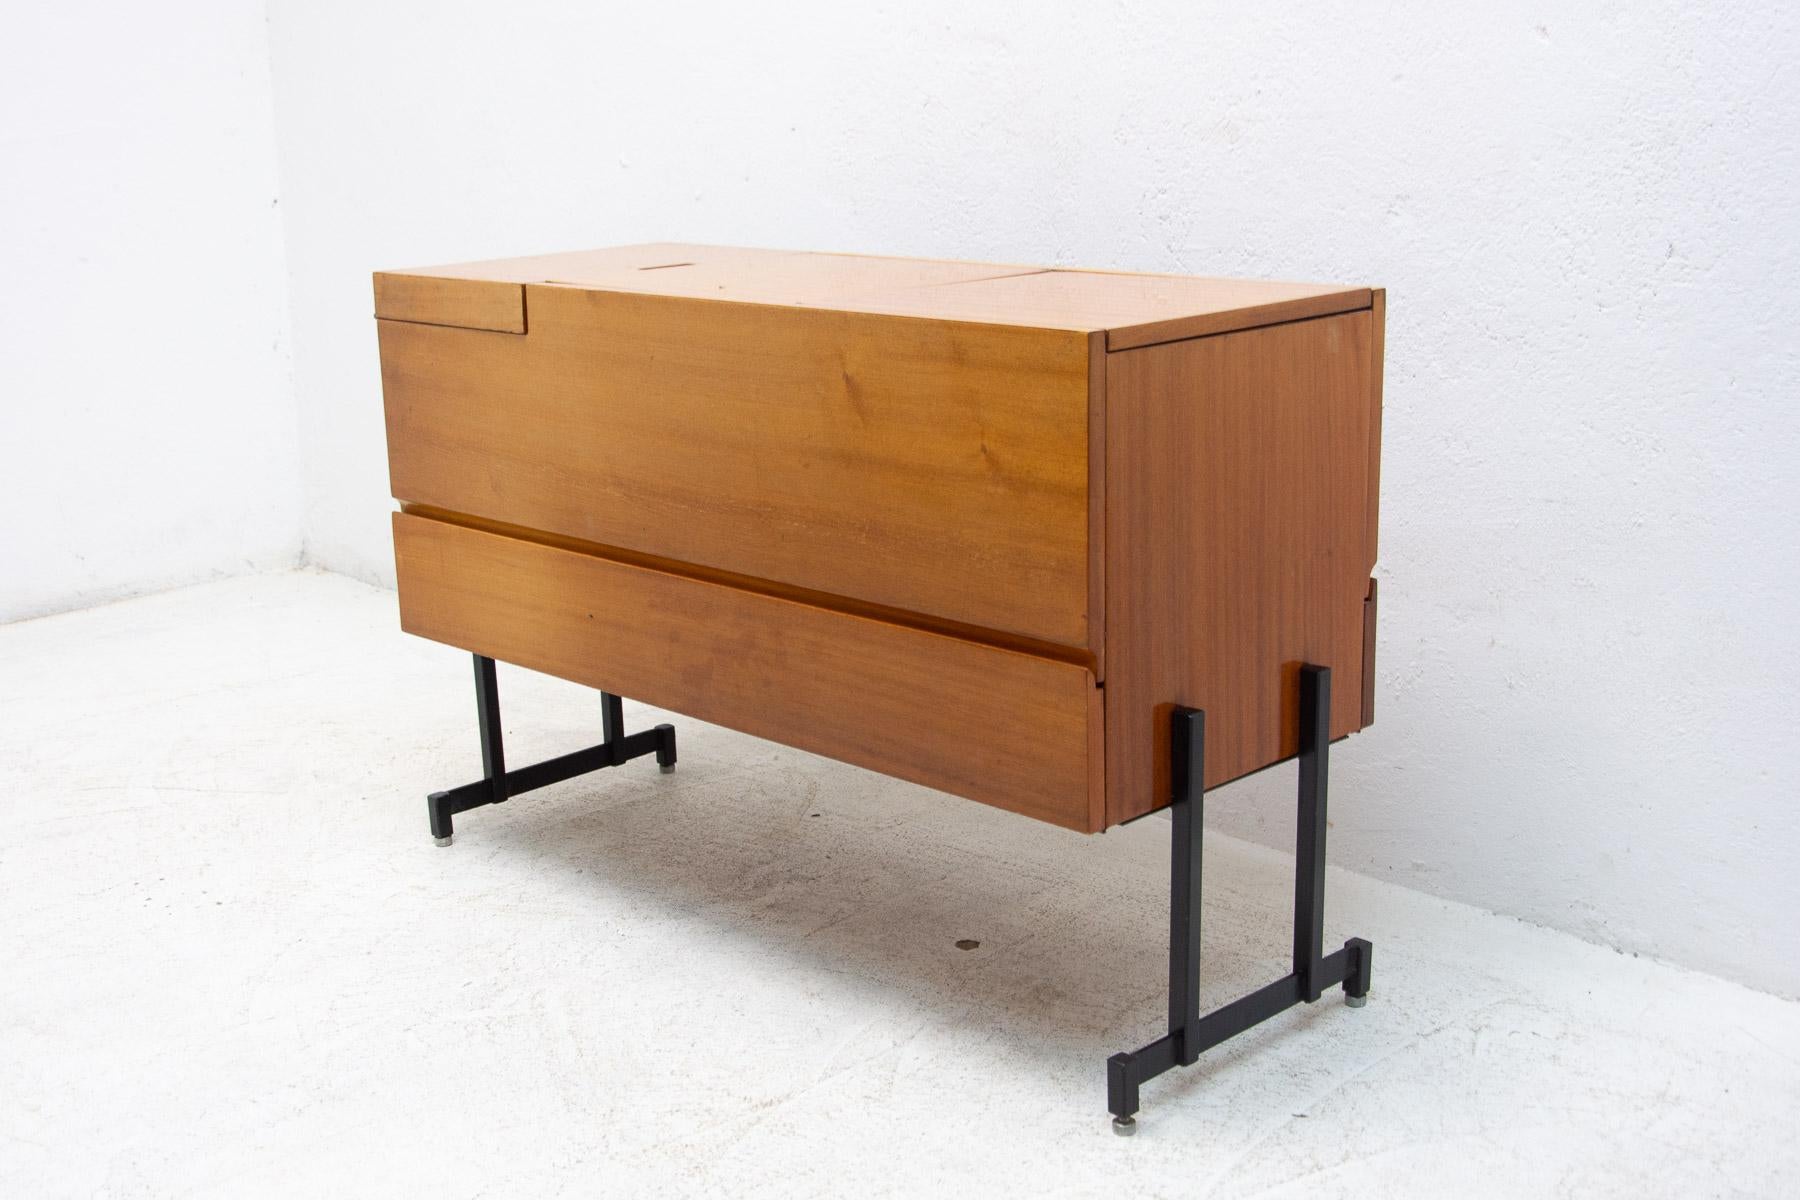 Ce meuble de bar est fabriqué en bois d'acajou avec des pieds en fer.

Il est en très bon état vintage. Une pièce rétro cool.

Hauteur : 67 cm

Largeur : 100 cm

Profondeur : 41 cm.
 